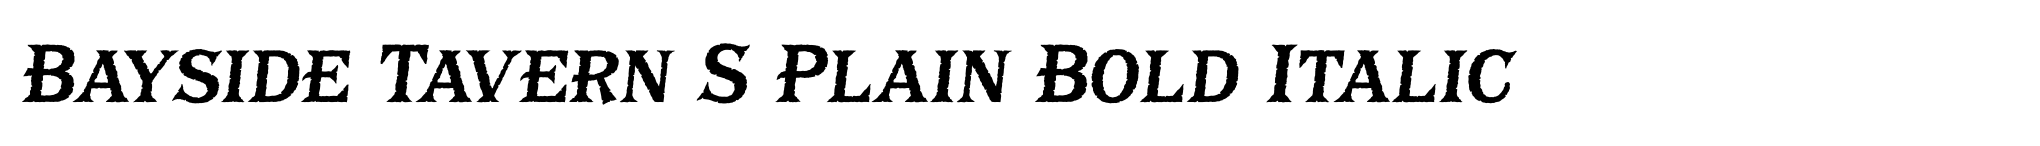 Bayside Tavern S Plain Bold Italic image